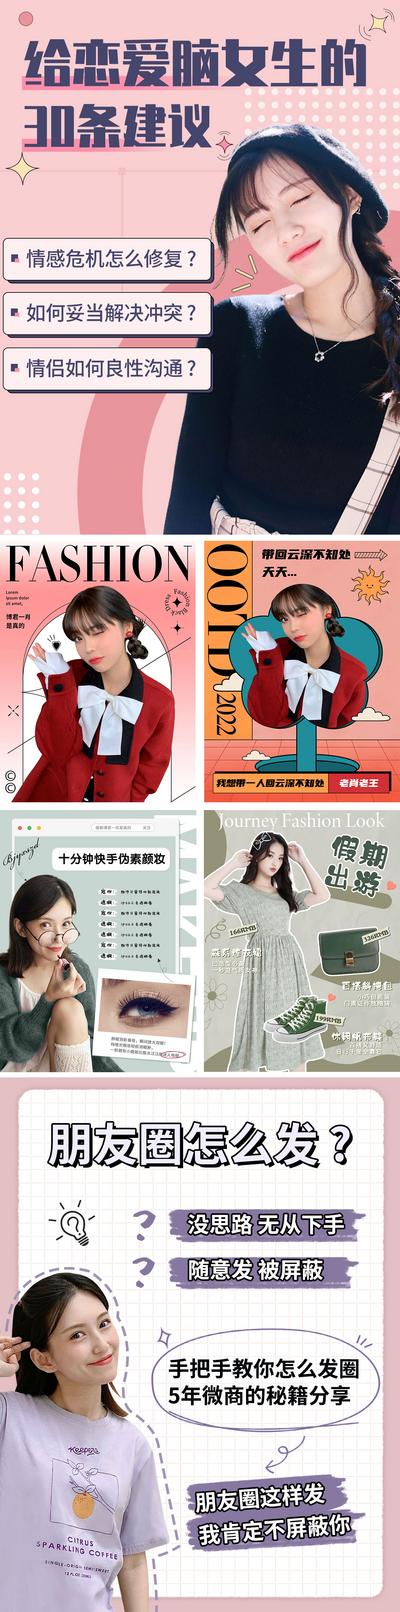 【南门网】海报 小红书 攻略 美妆 穿搭 时尚 可爱 日系 人物 系列